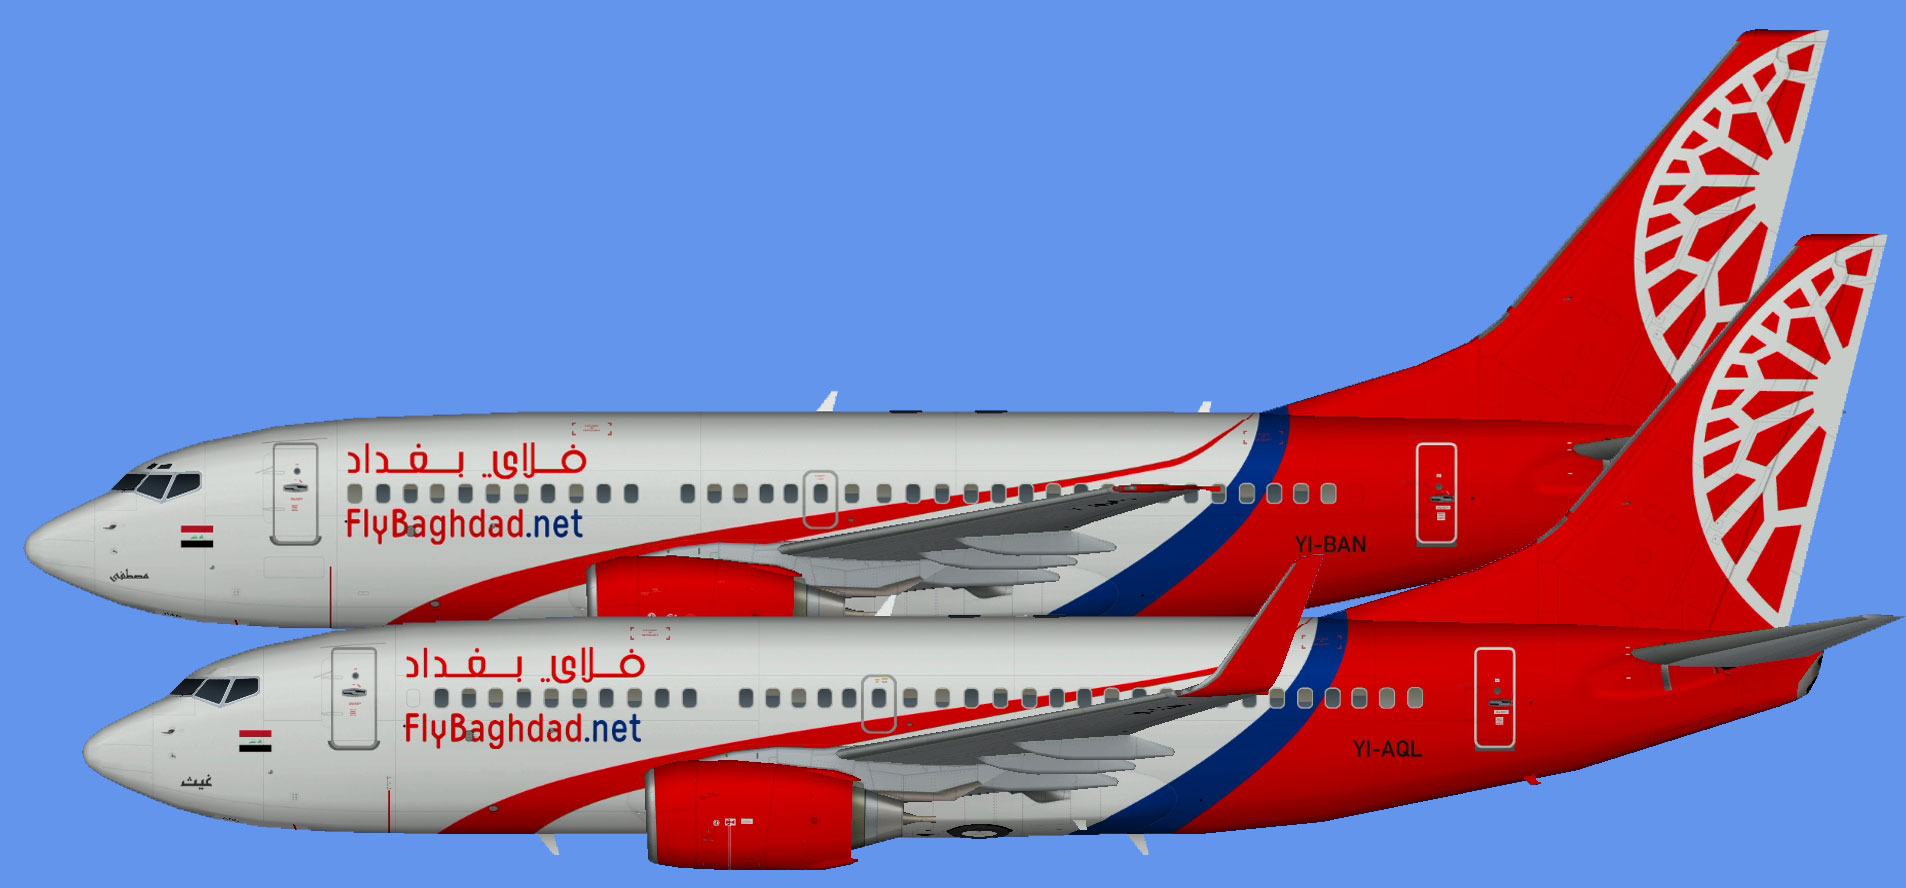 Fly Baghdad Boeing 737-700